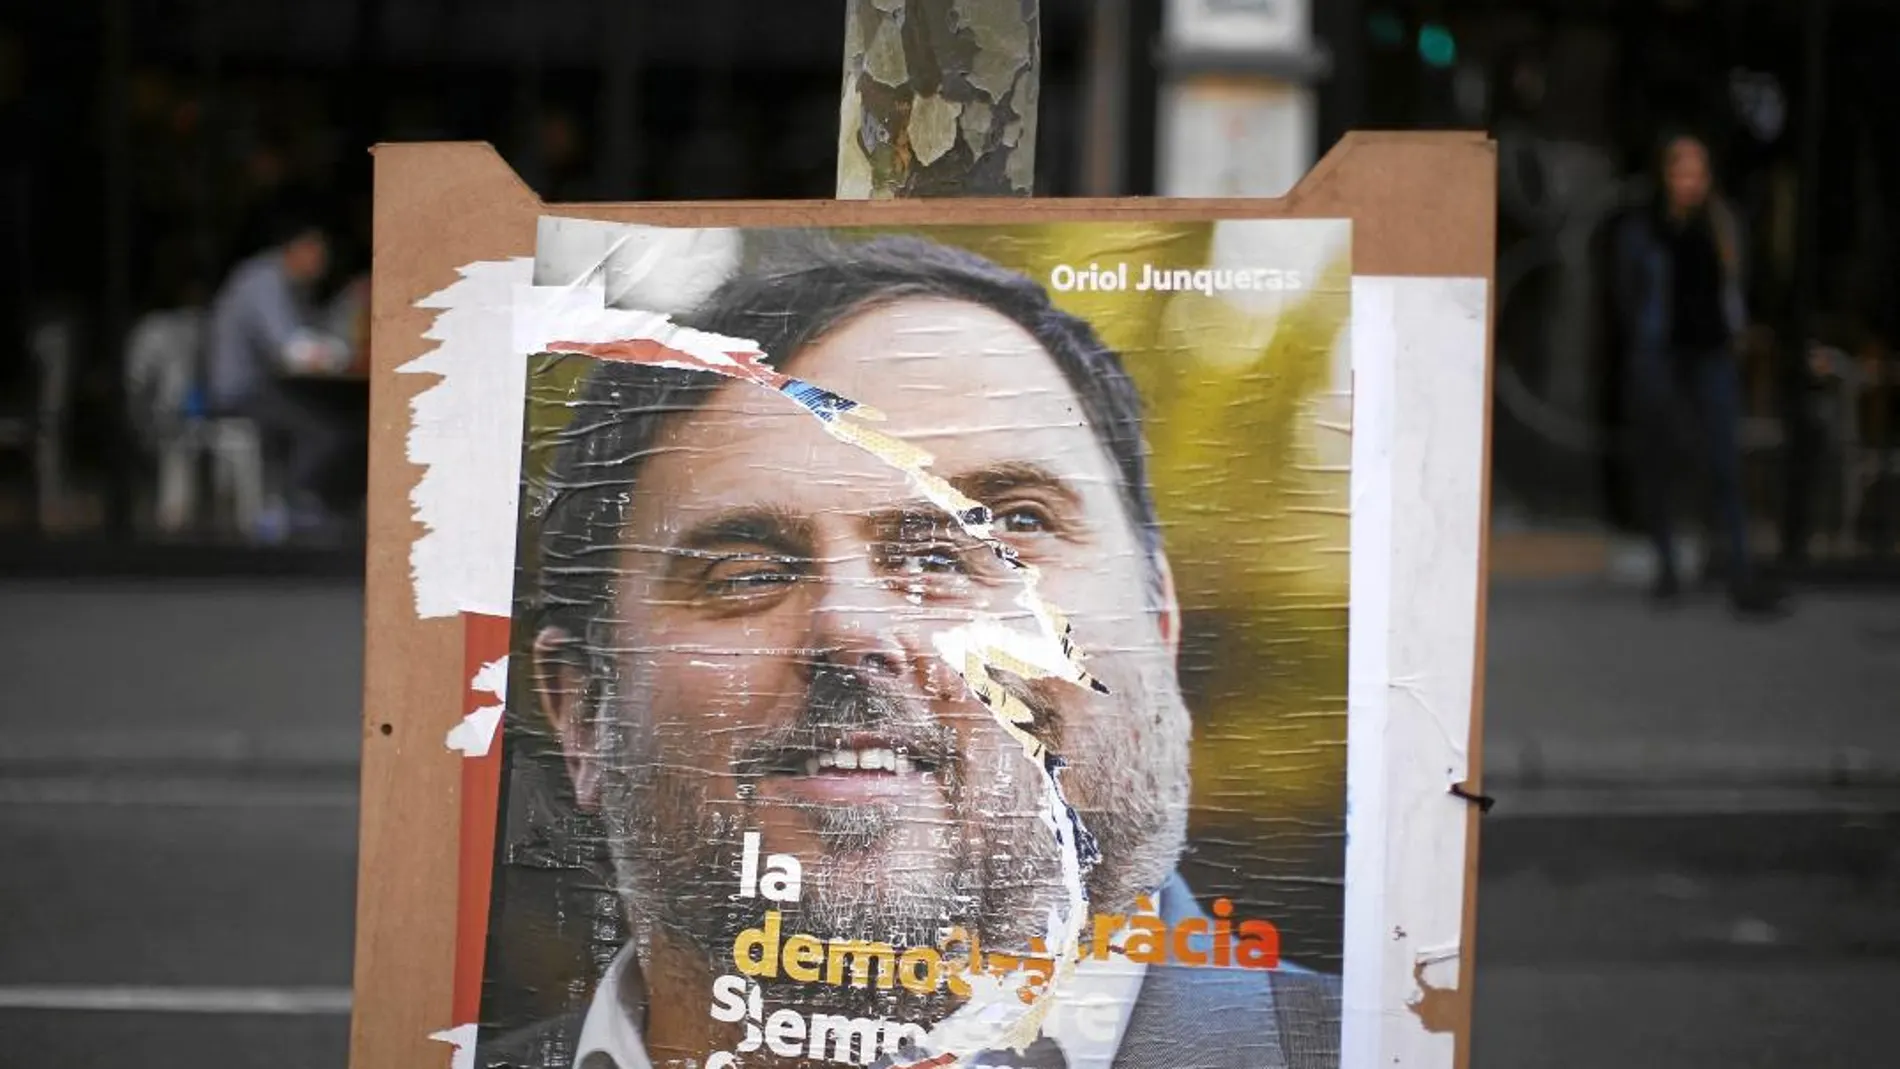 Las calles de Barcelona aún lucen carteles electorales de ERC con el retrato de Oriol Junqueras